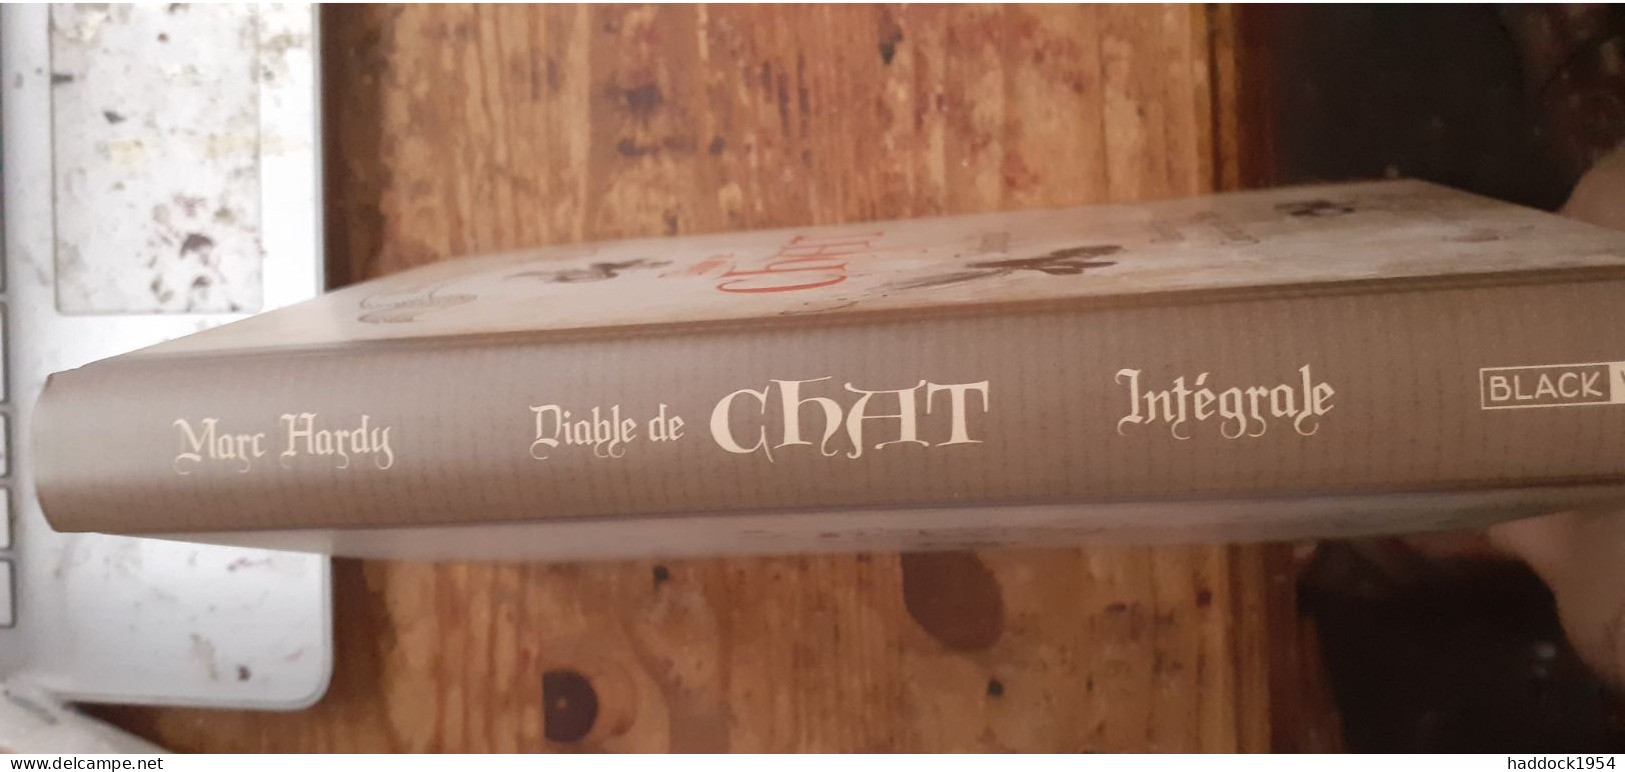 Diable De Chat Intégrale MARC HARDY Black Et White éditions 2019 - Prime Copie